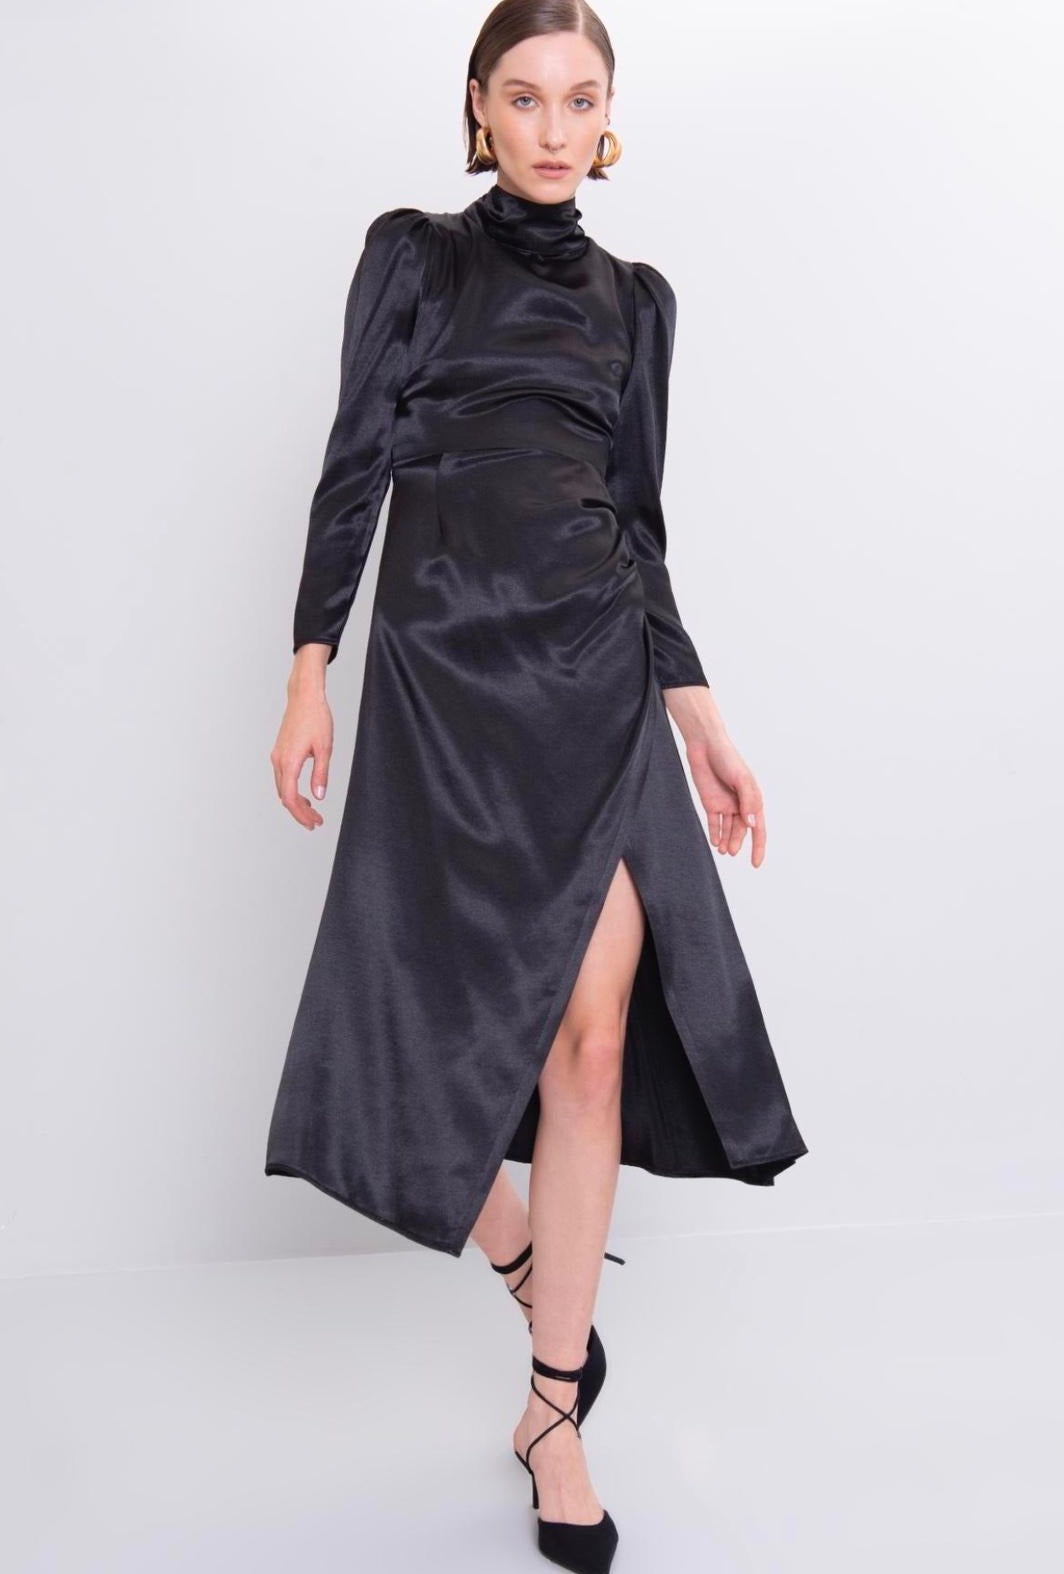 Дамска рокля SIBILA  https://bvseductive.com/products/дамска-рокля-sibila  45 % вискоза 55 % нилон официална дълга рокля в черен змийски десен в миди дължина с дълъг ръкав вталена кройка, подчертаваща фигурата изработена от приятна материя чудесен избор за Вашата визия